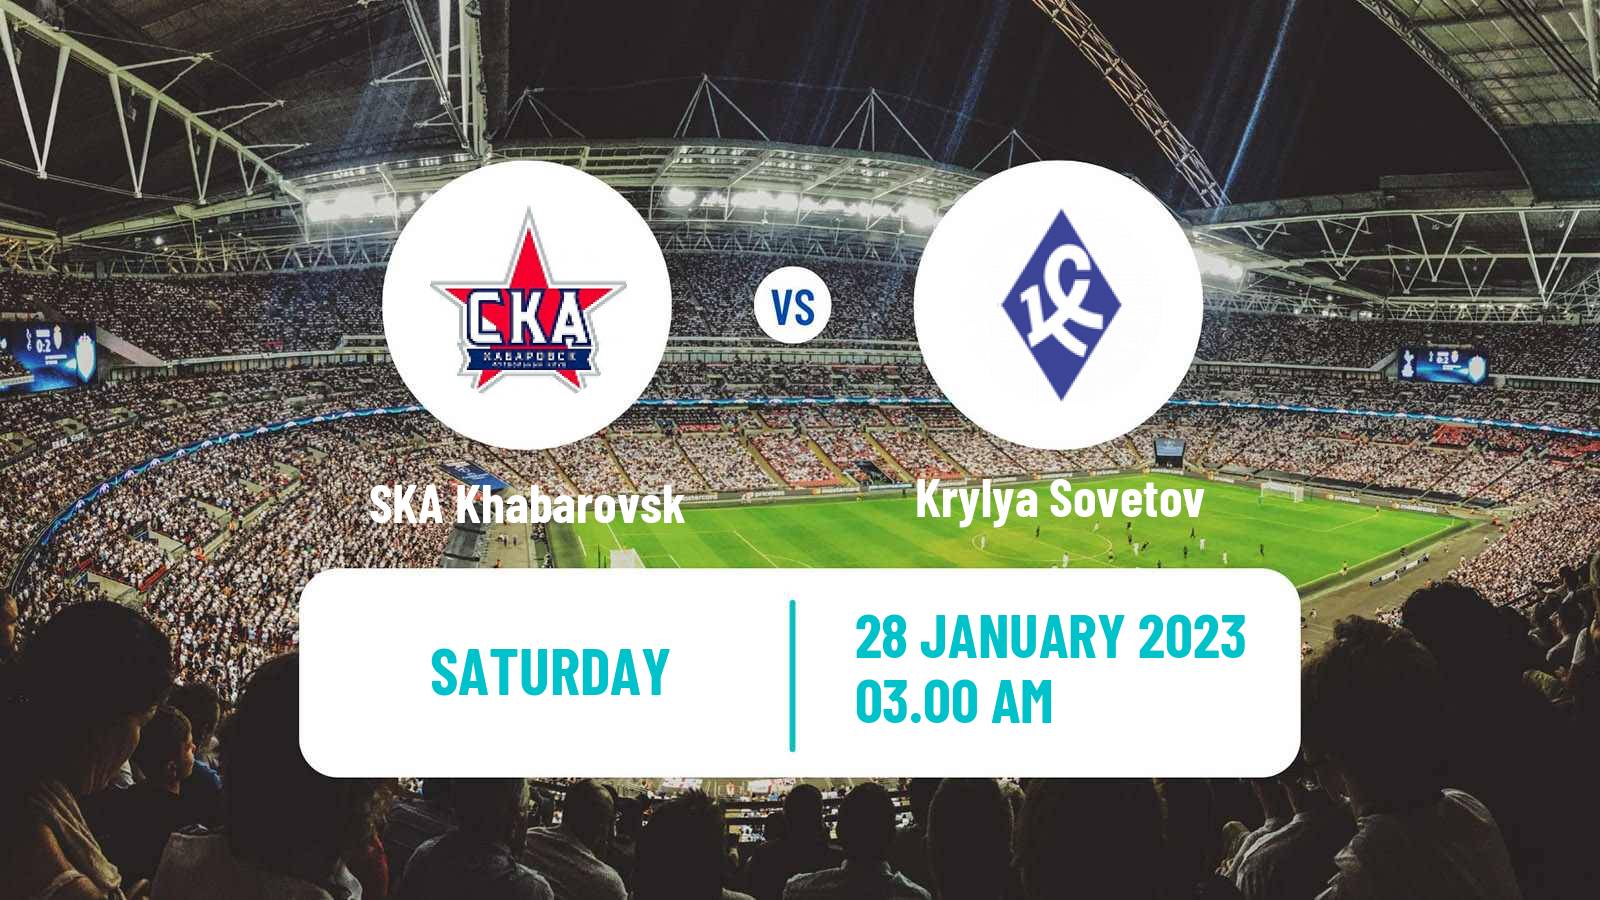 Soccer Club Friendly SKA Khabarovsk - Krylya Sovetov